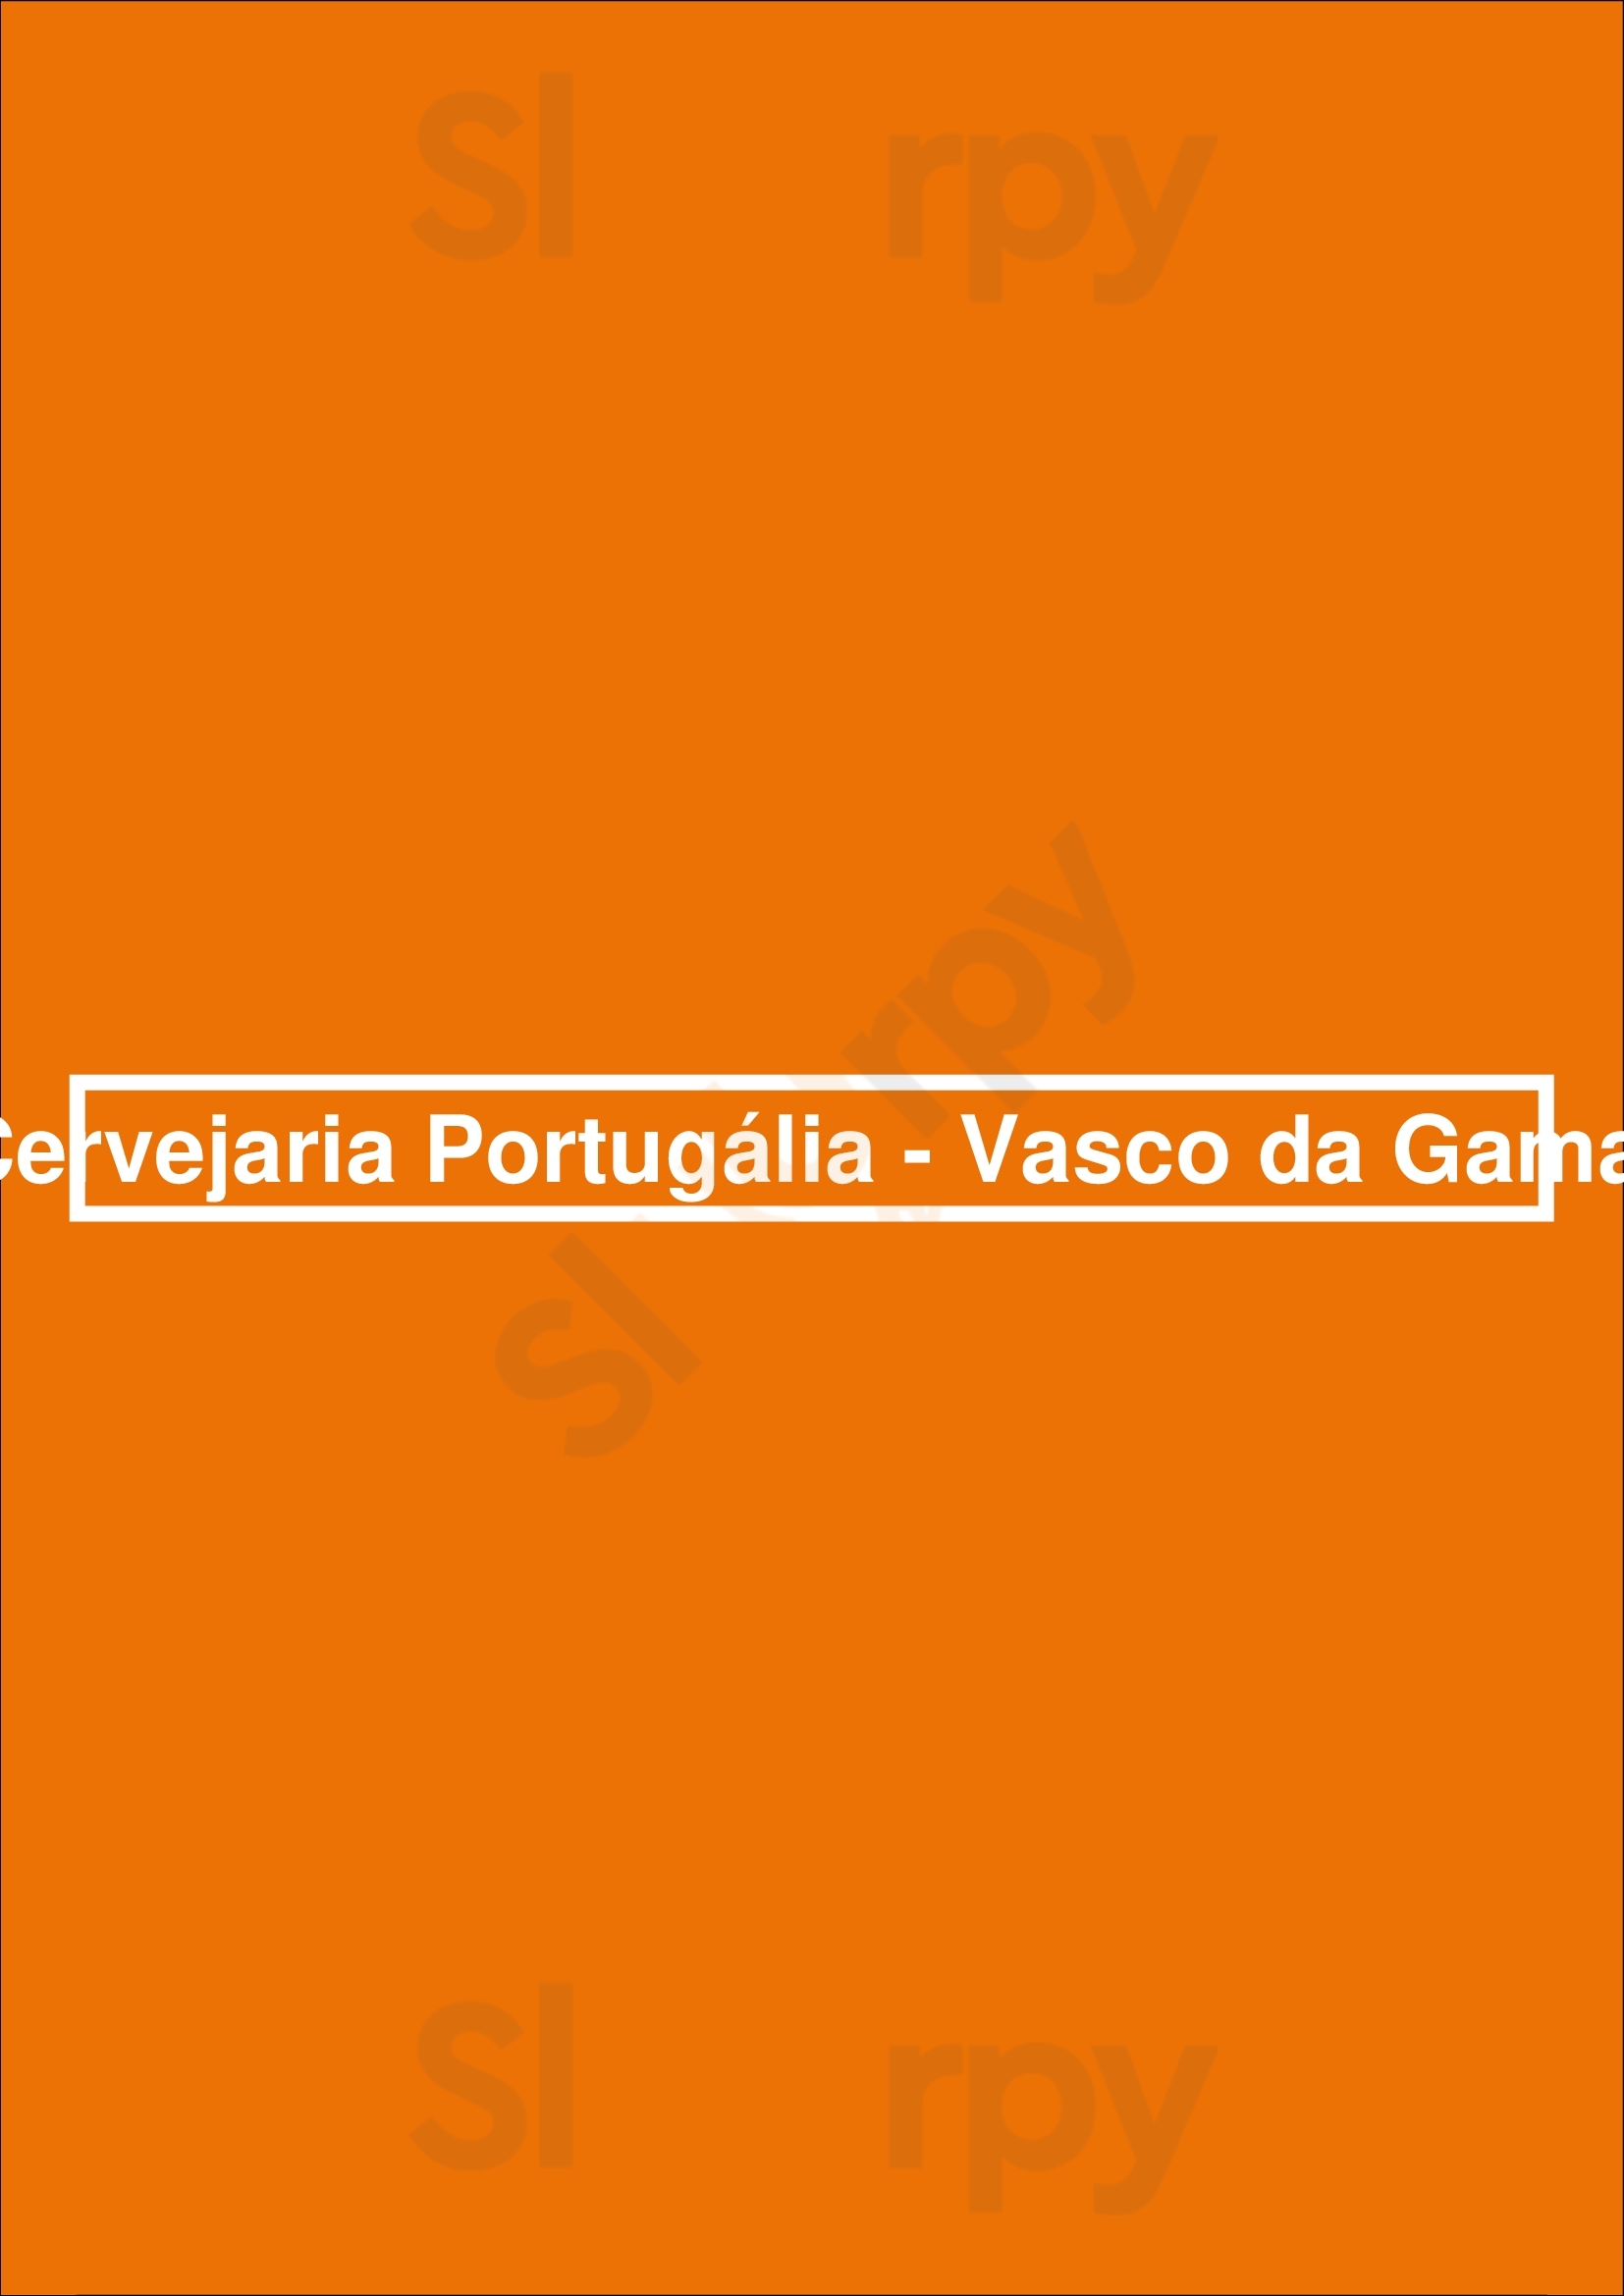 Portugália Cervejaria - Vasco Da Gama Lisboa Menu - 1